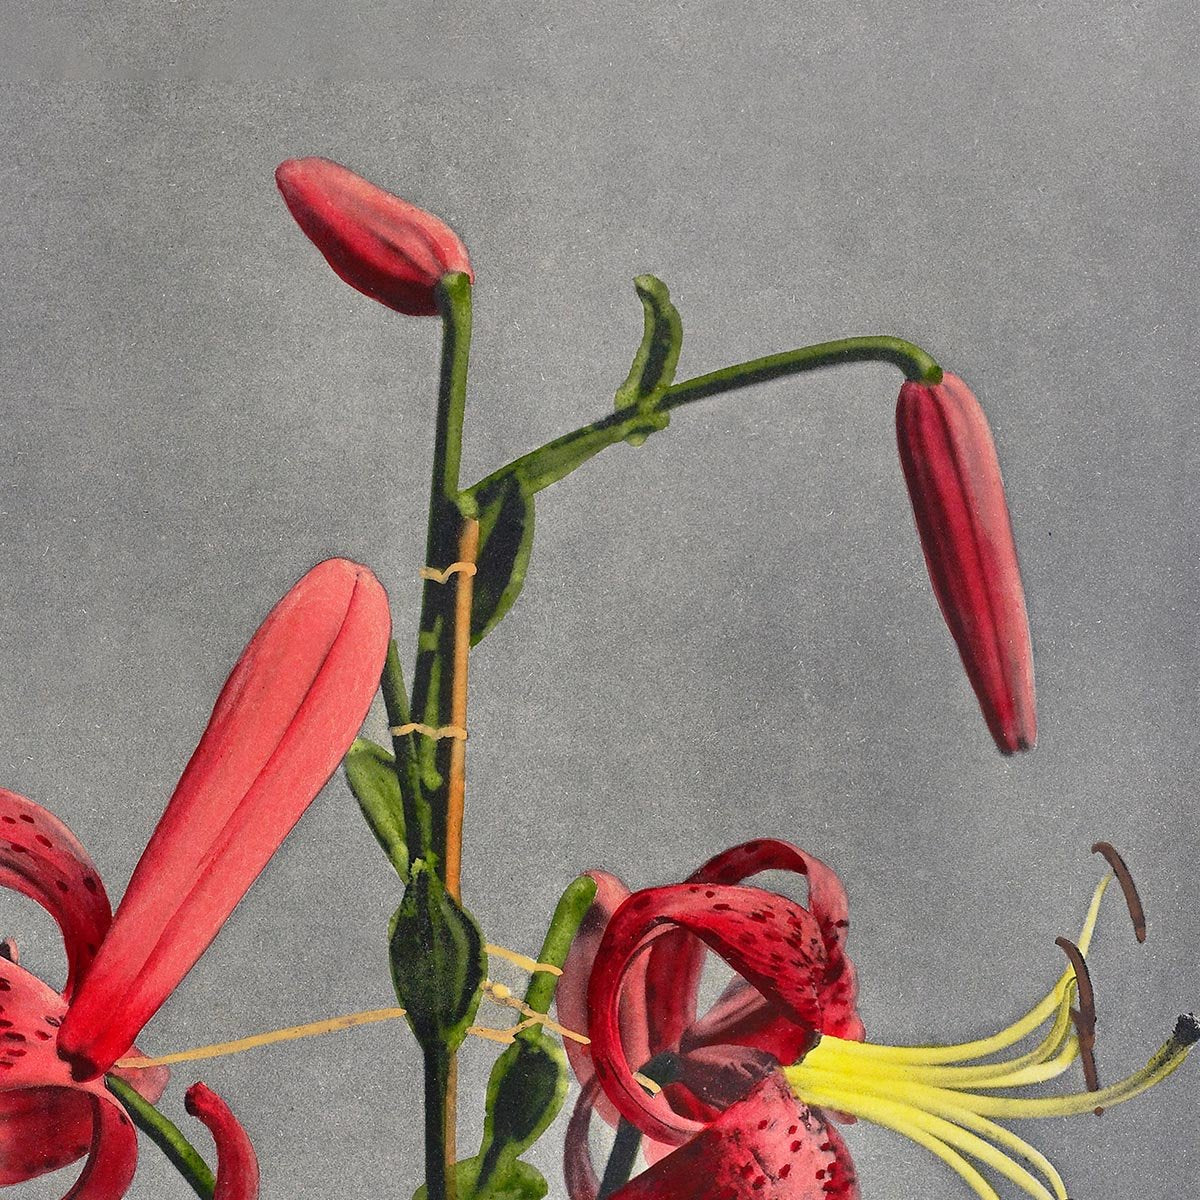 Red Lily by Ogawa Kazumasa